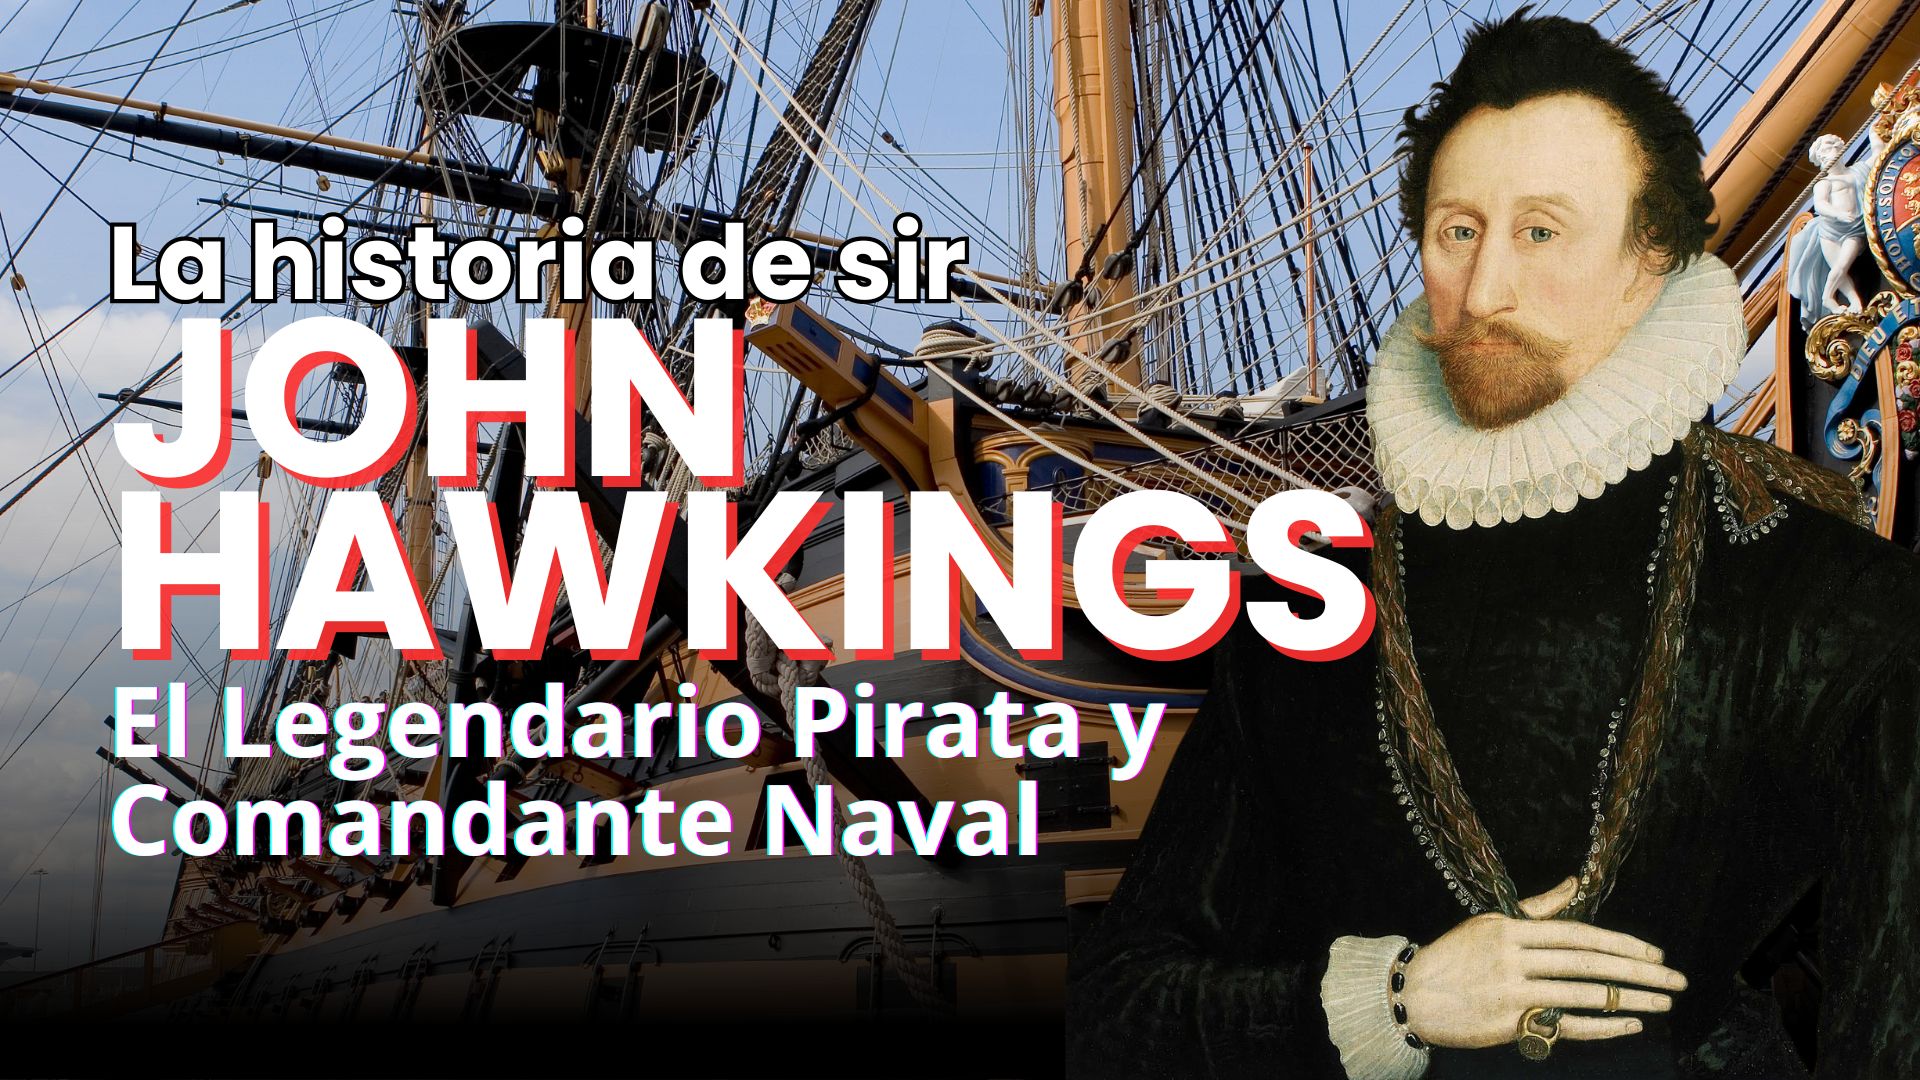 Sir John Hawkins El Legendario Navegante y Comandante Naval